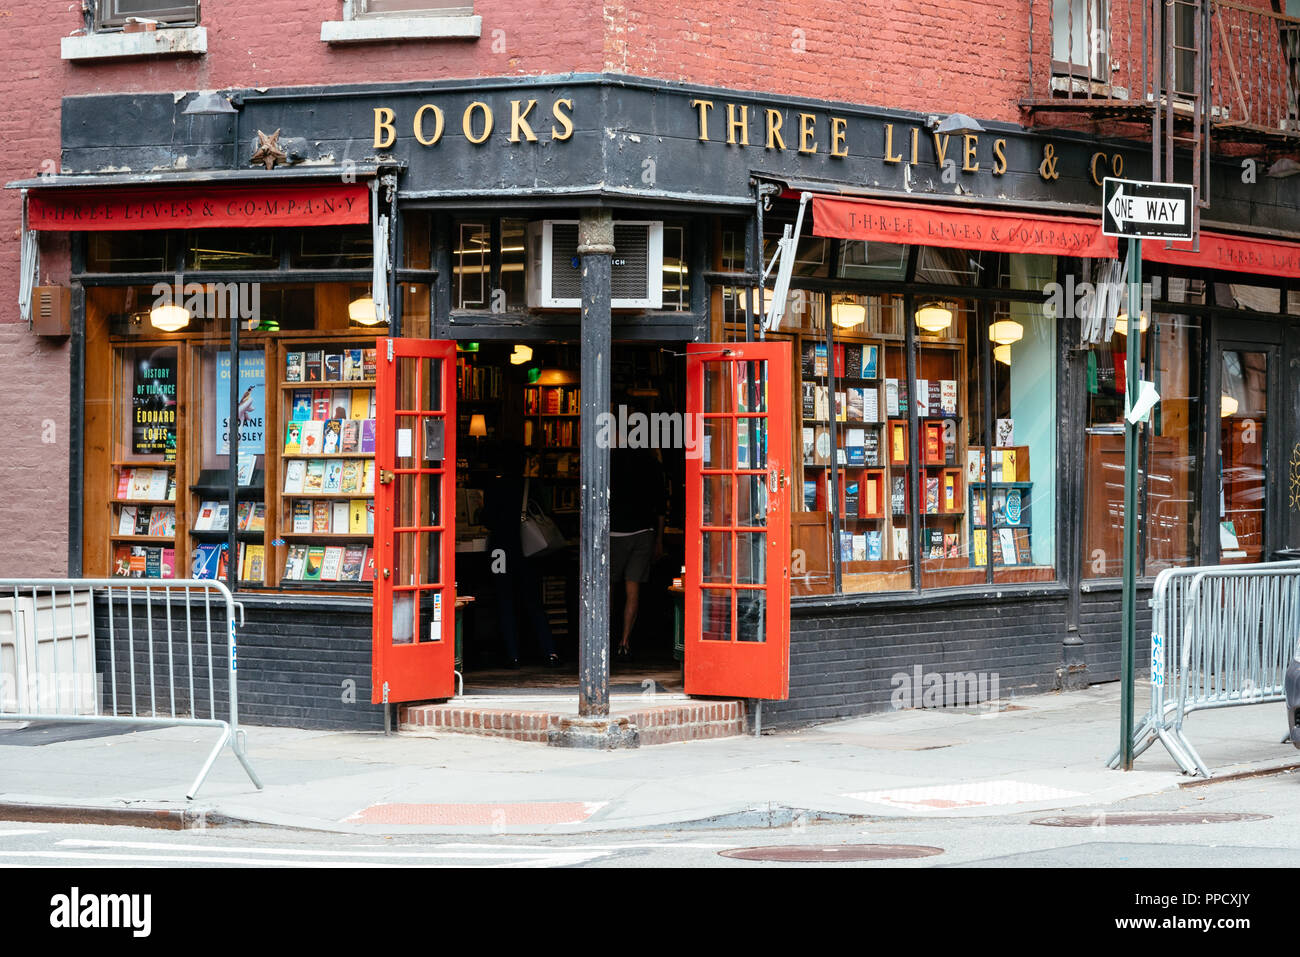 La città di New York, Stati Uniti d'America - 22 Giugno 2018: tre vite e Co bookstore in Greenwich Village. Vista esterna Foto Stock